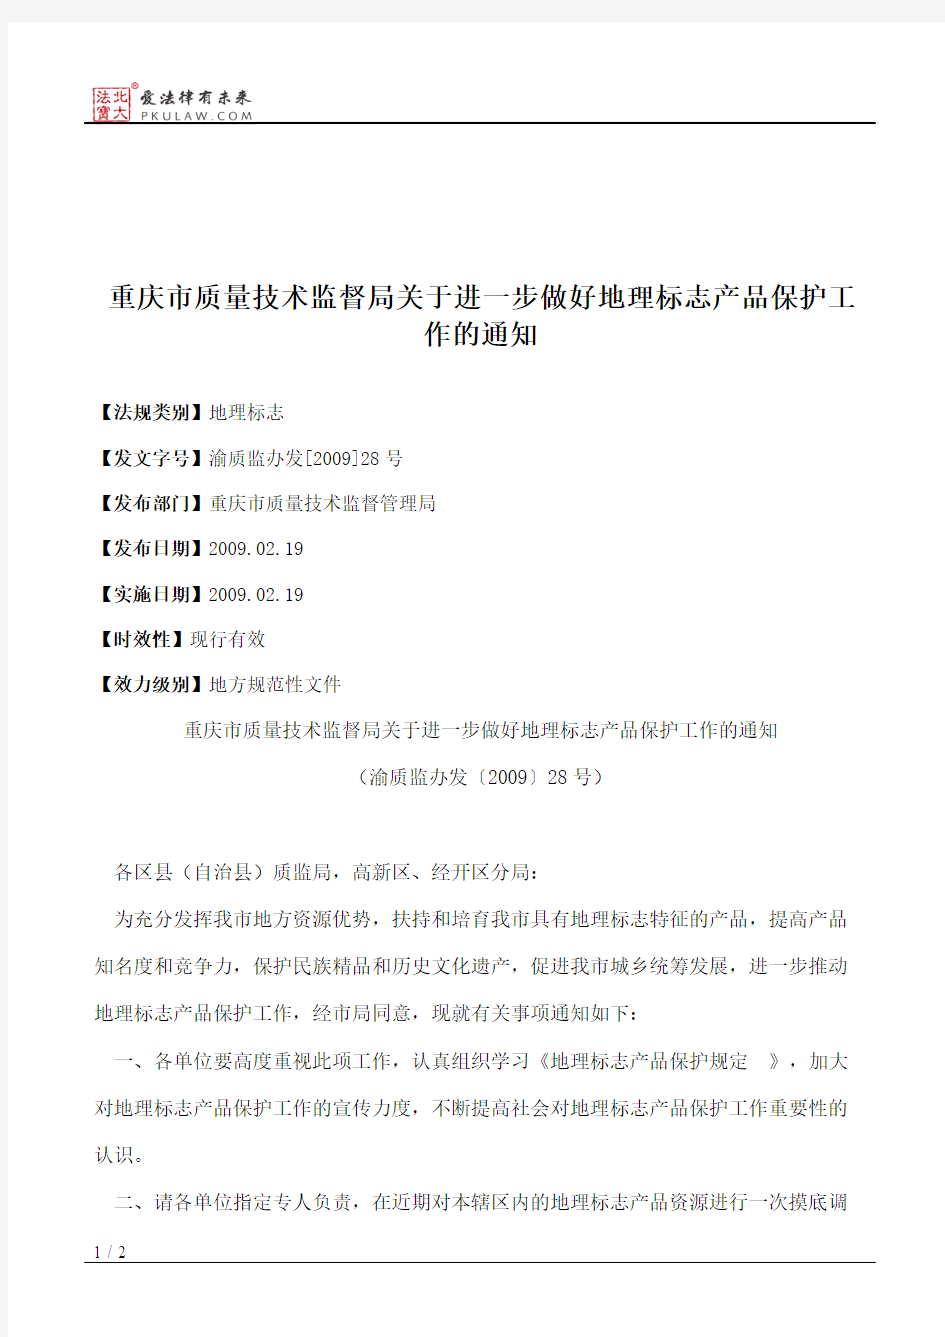 重庆市质量技术监督局关于进一步做好地理标志产品保护工作的通知